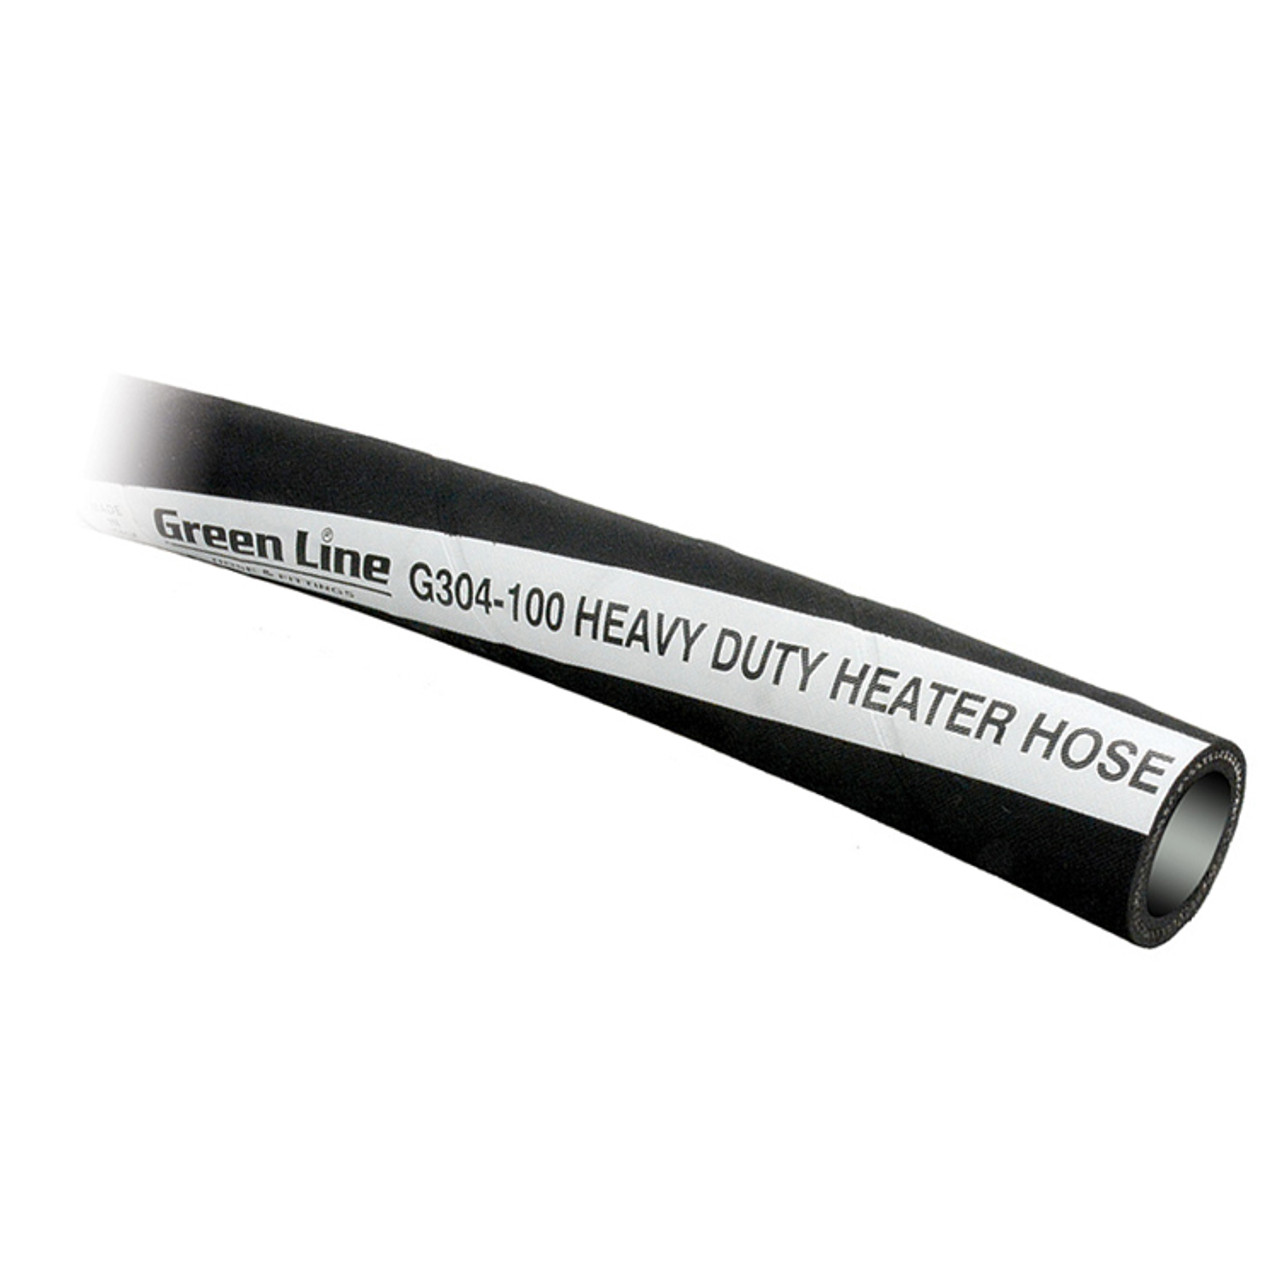 1" Heavy Duty Heater Hose   G304-100